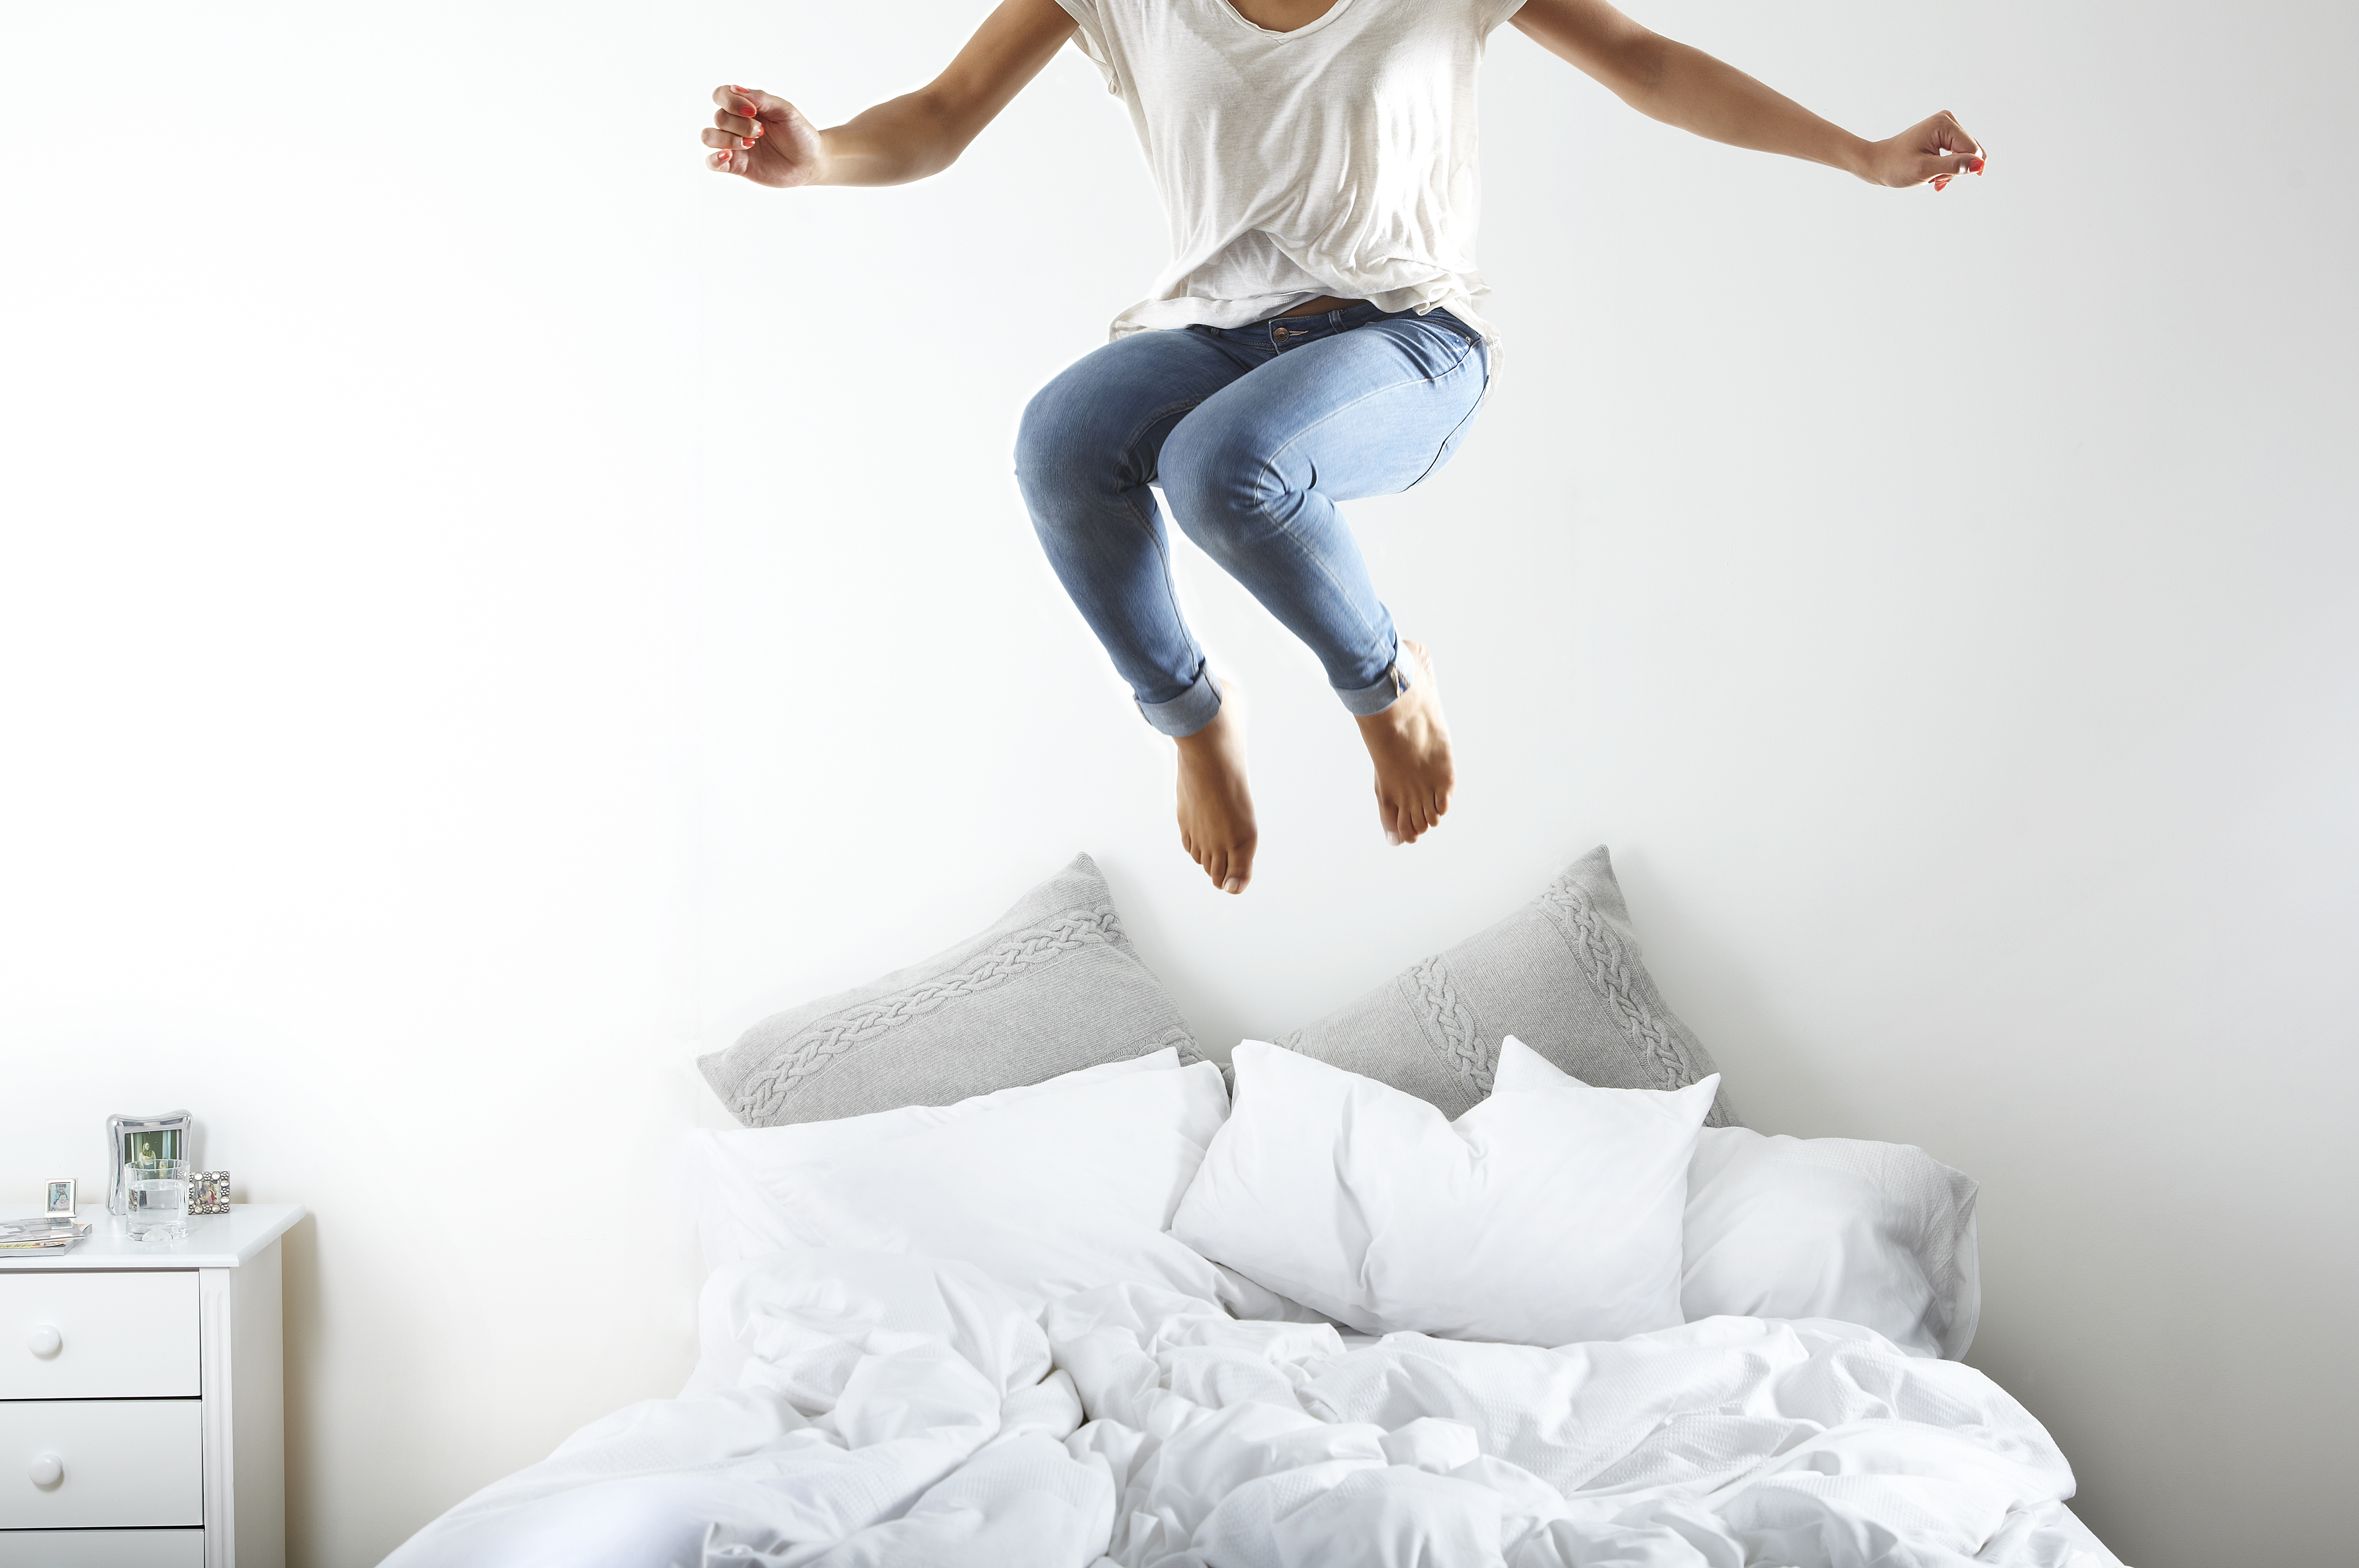 Portrait d'une femme sautant sur le lit | Source : Getty Images